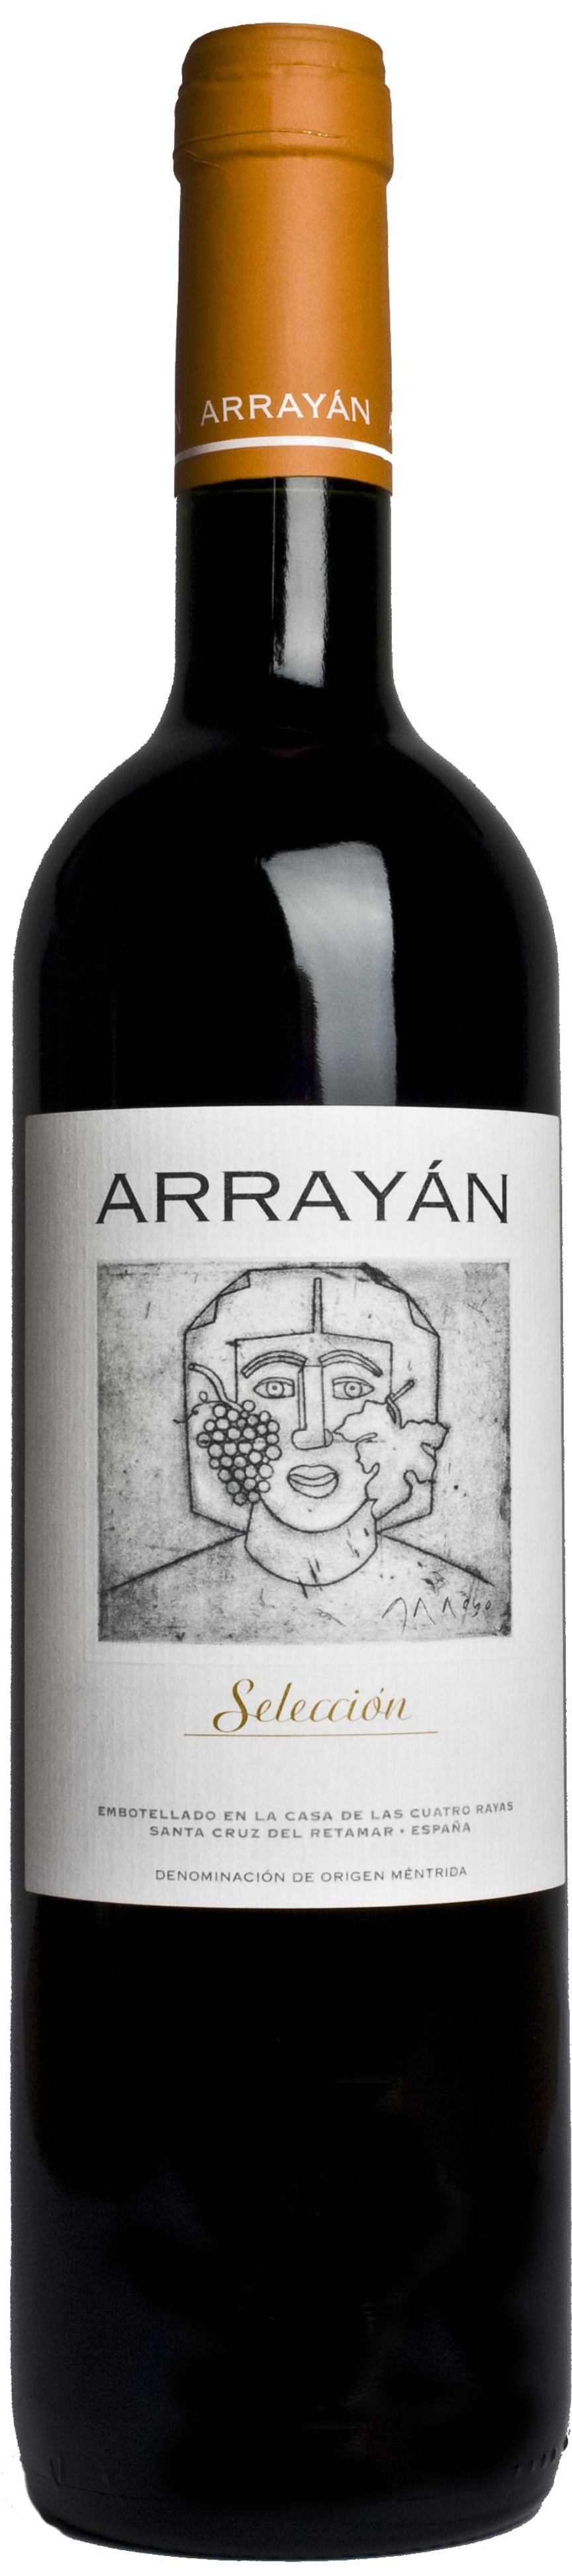 Image of Wine bottle Arrayán Selección